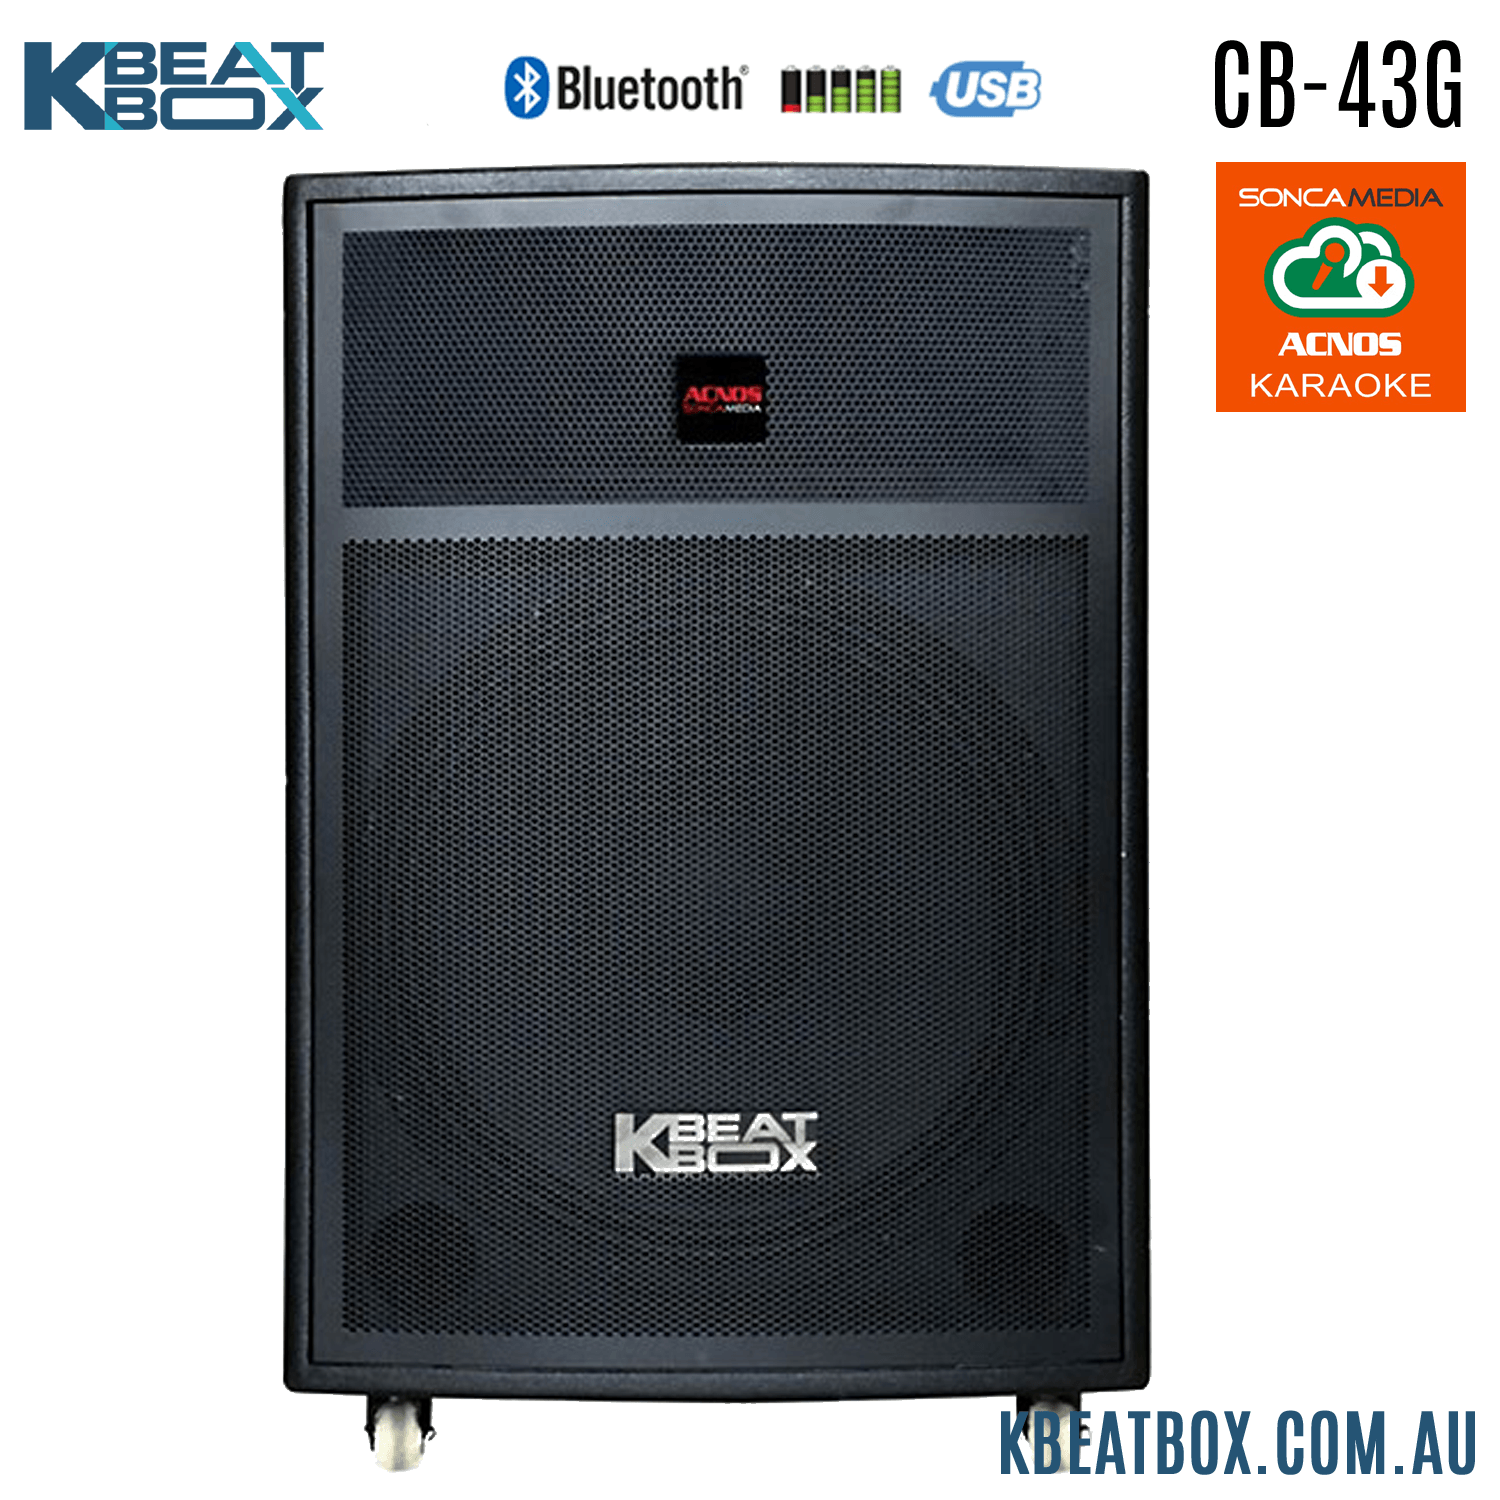 KBeatBox CB-43G [100W RMS / 450W PMPO] Karaoke Powered Speaker System + 2 Wireless Mic's + Karaoke Cloud App - Karaoke Home Entertainment